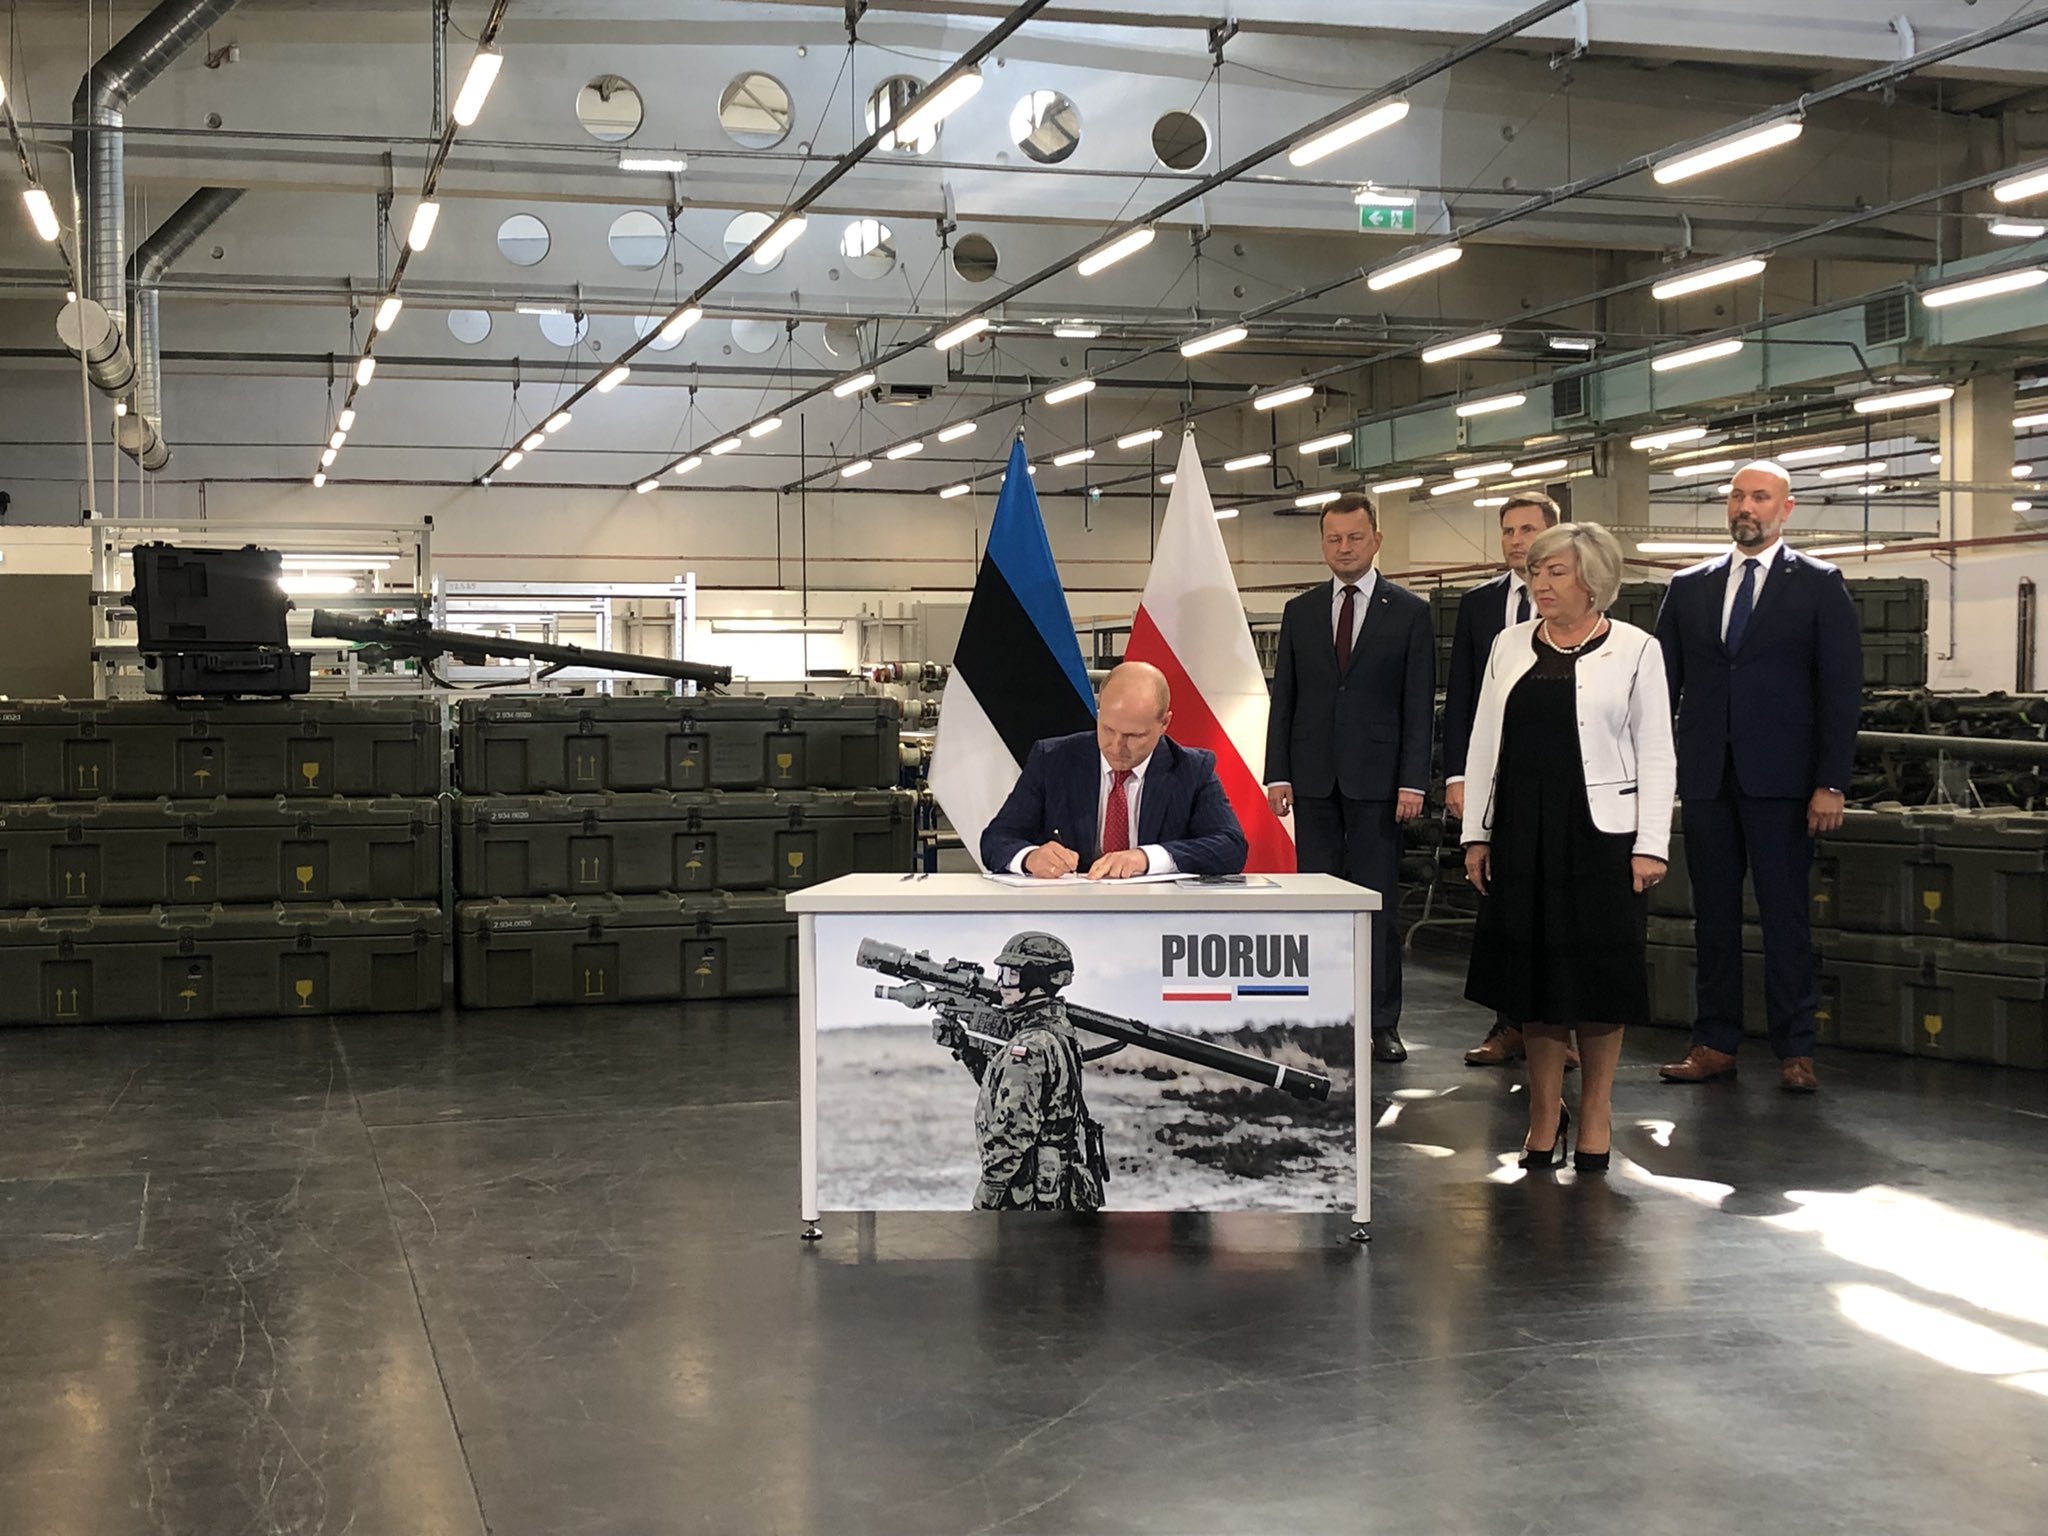 Estland kauft polnische Piorun MANPADS, die Luftziele in bis zu 6,5 km Entfernung zerstören können